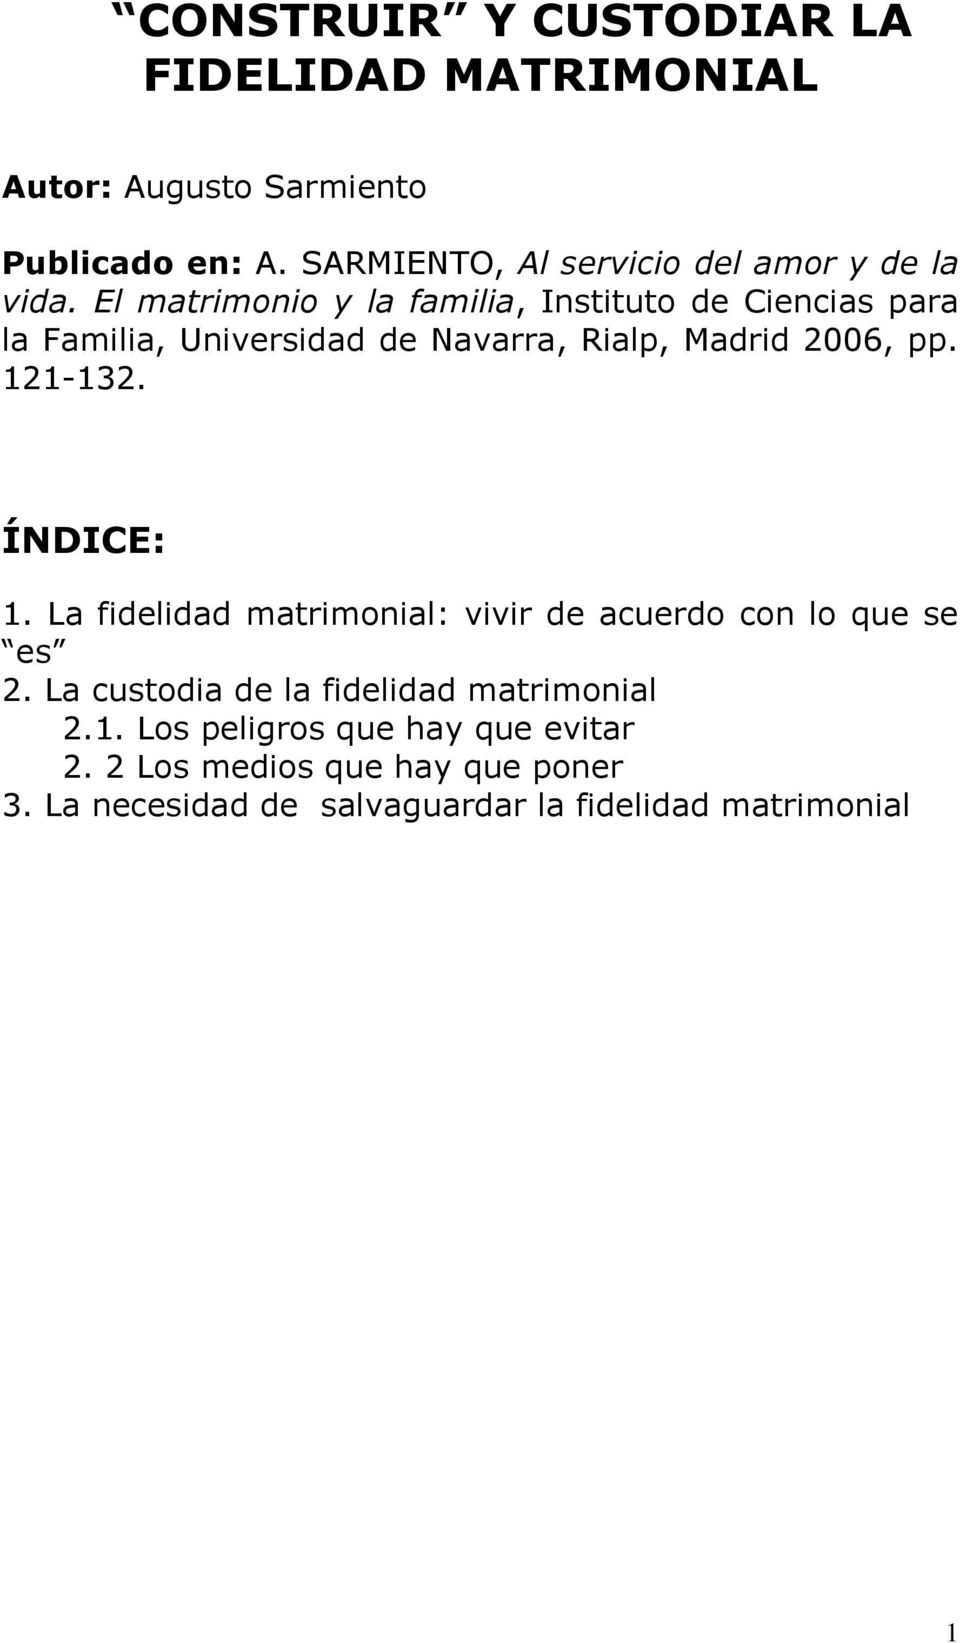 El matrimonio y la familia, Instituto de Ciencias para la Familia, Universidad de Navarra, Rialp, Madrid 2006, pp. 121-132.